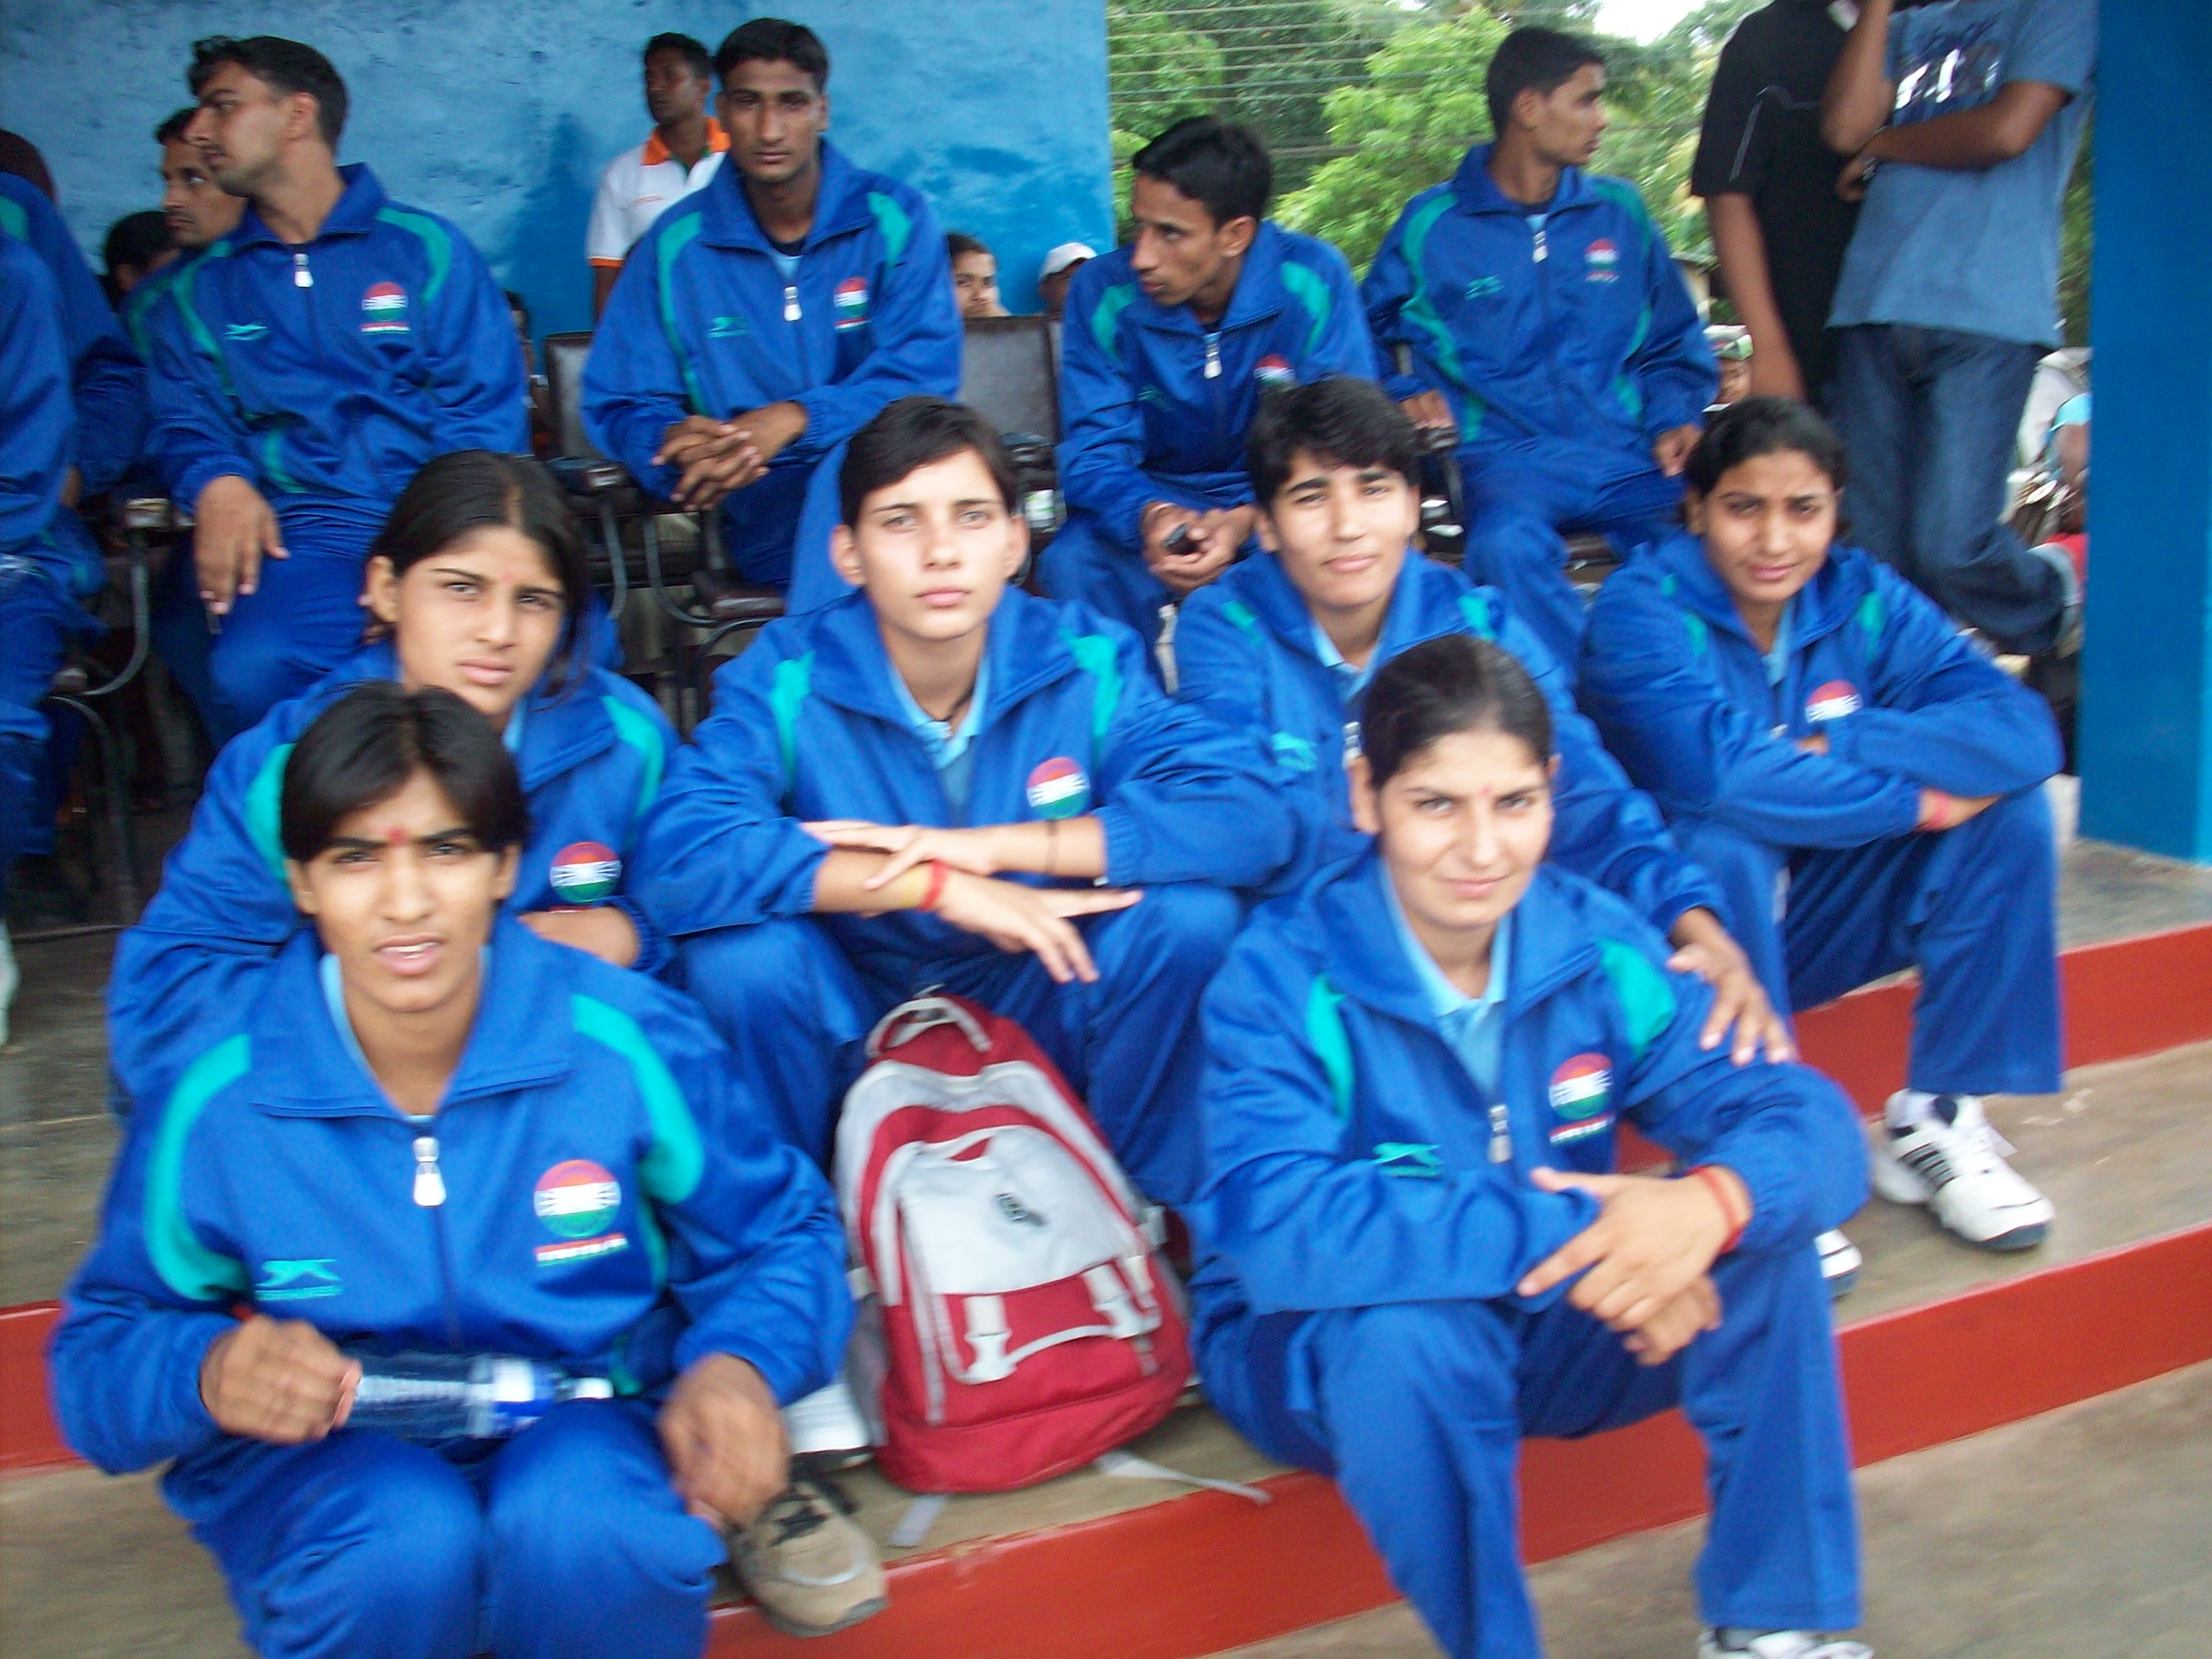 india federation Amateur kabaddi of